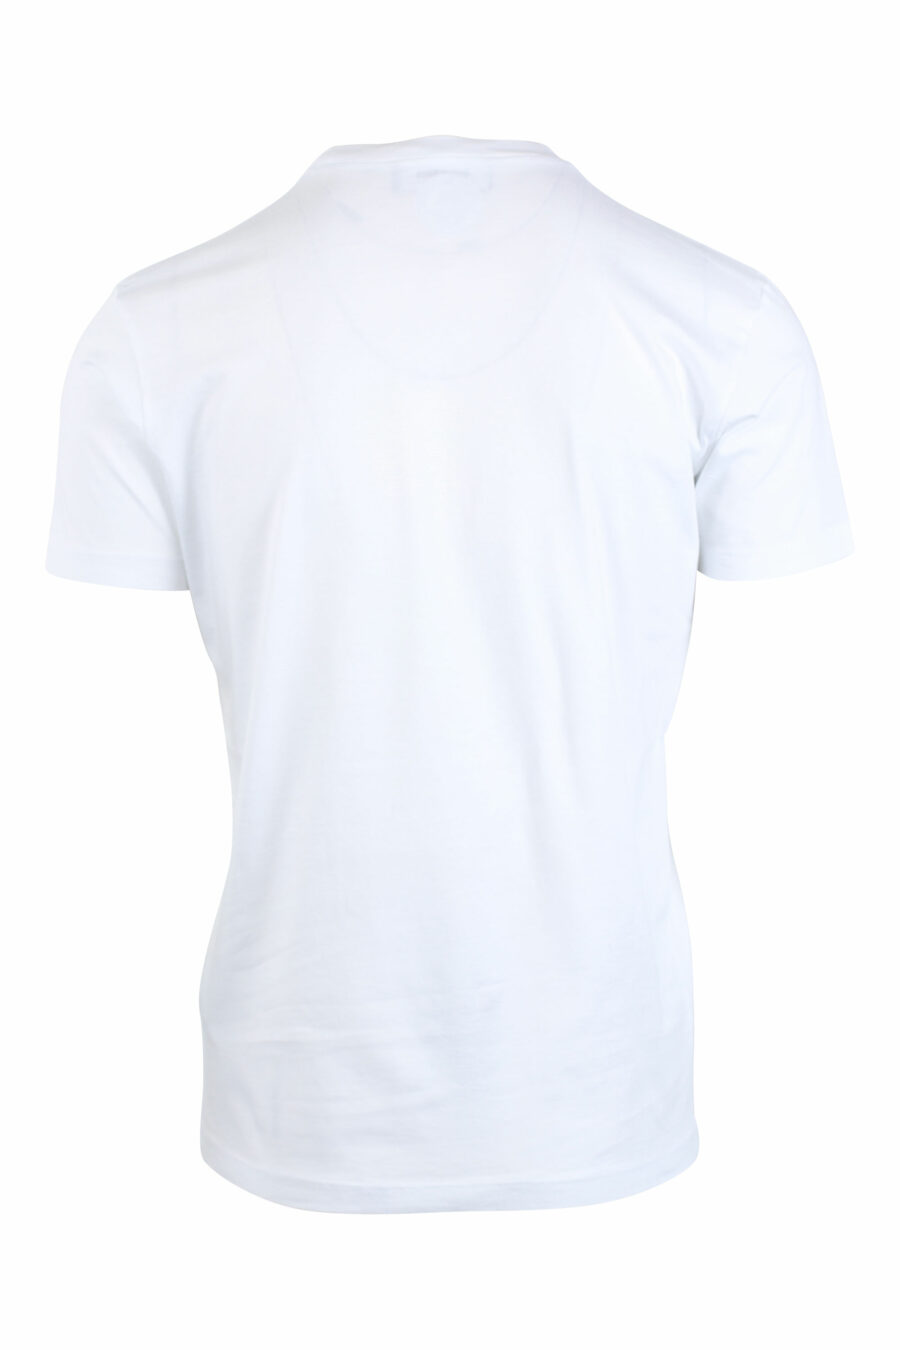 Weißes T-Shirt mit fröhlichem grünen Blatt-Logo - IMG 2630